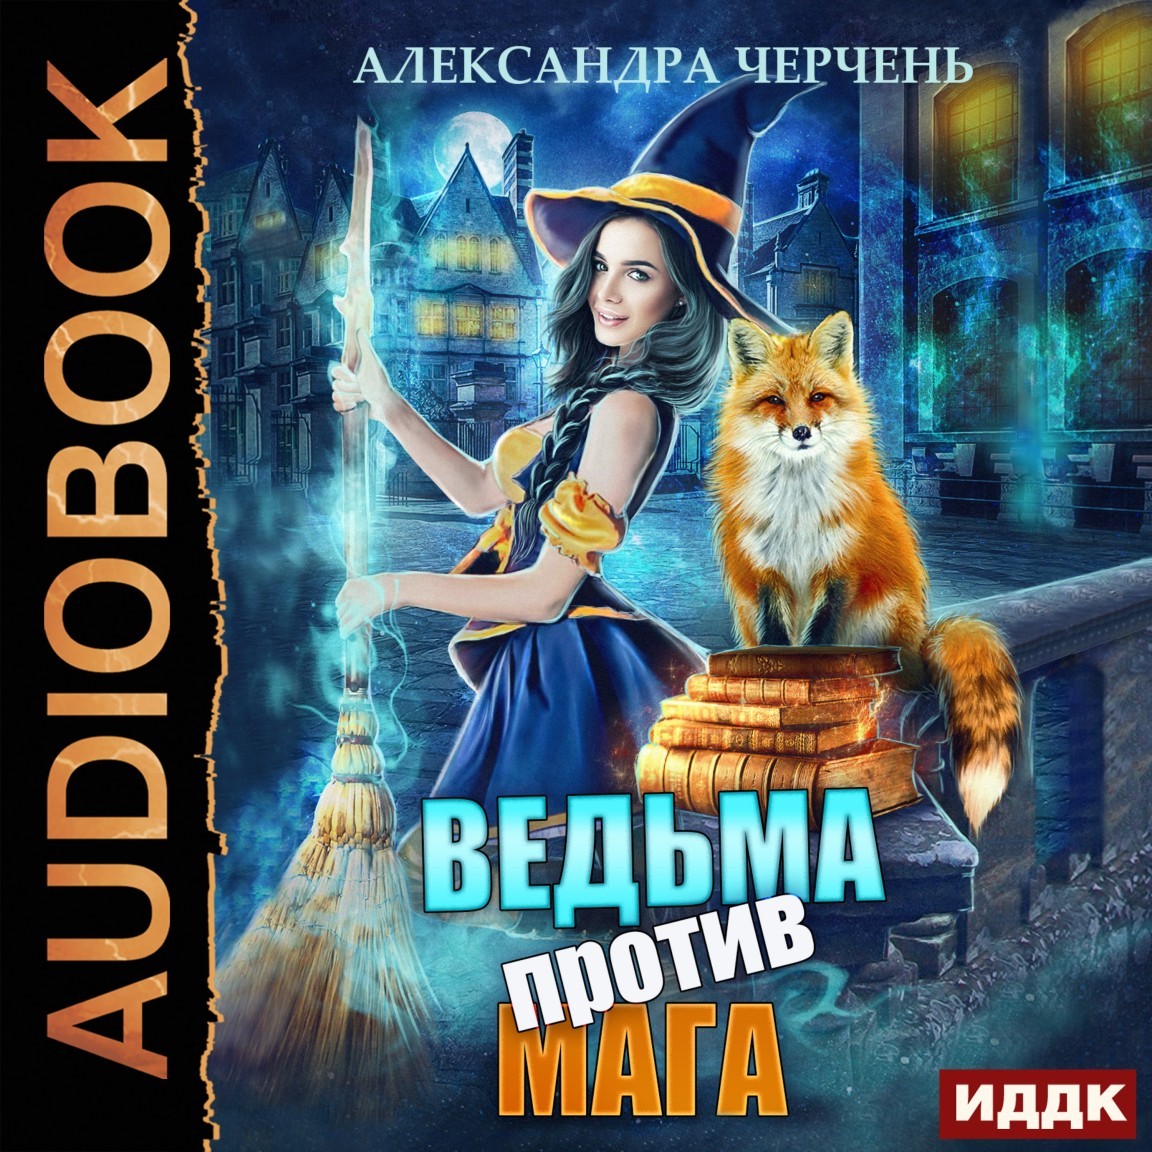 Ведьма против мага - Александра Черчень